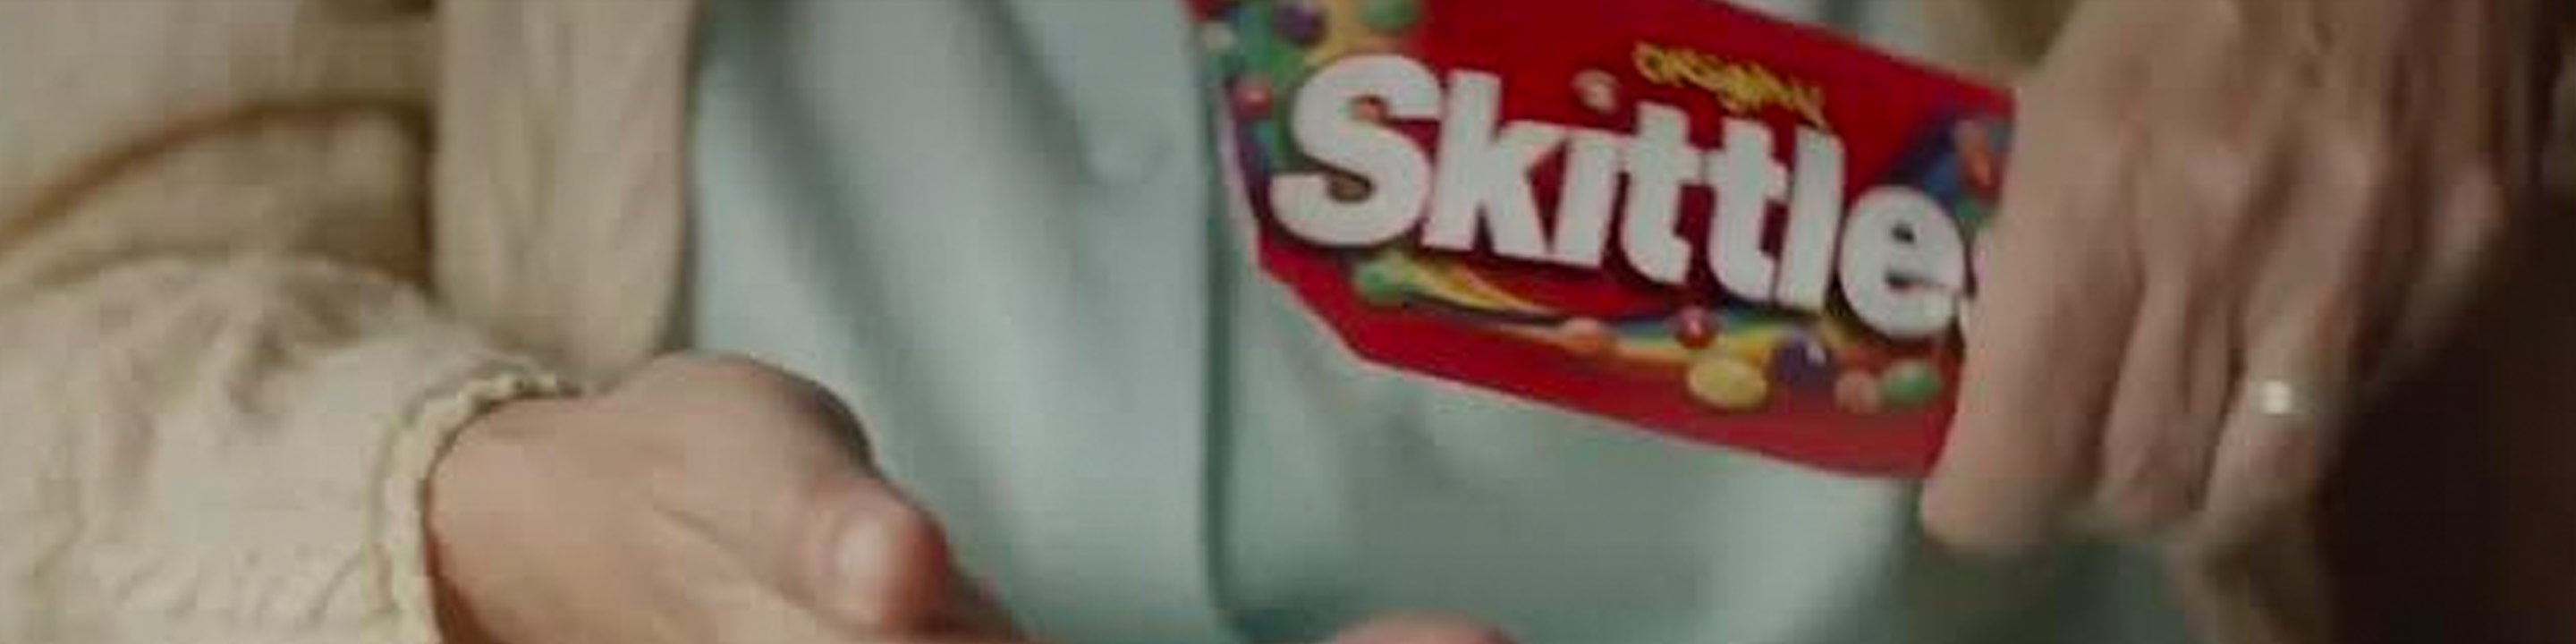 Skittles packet